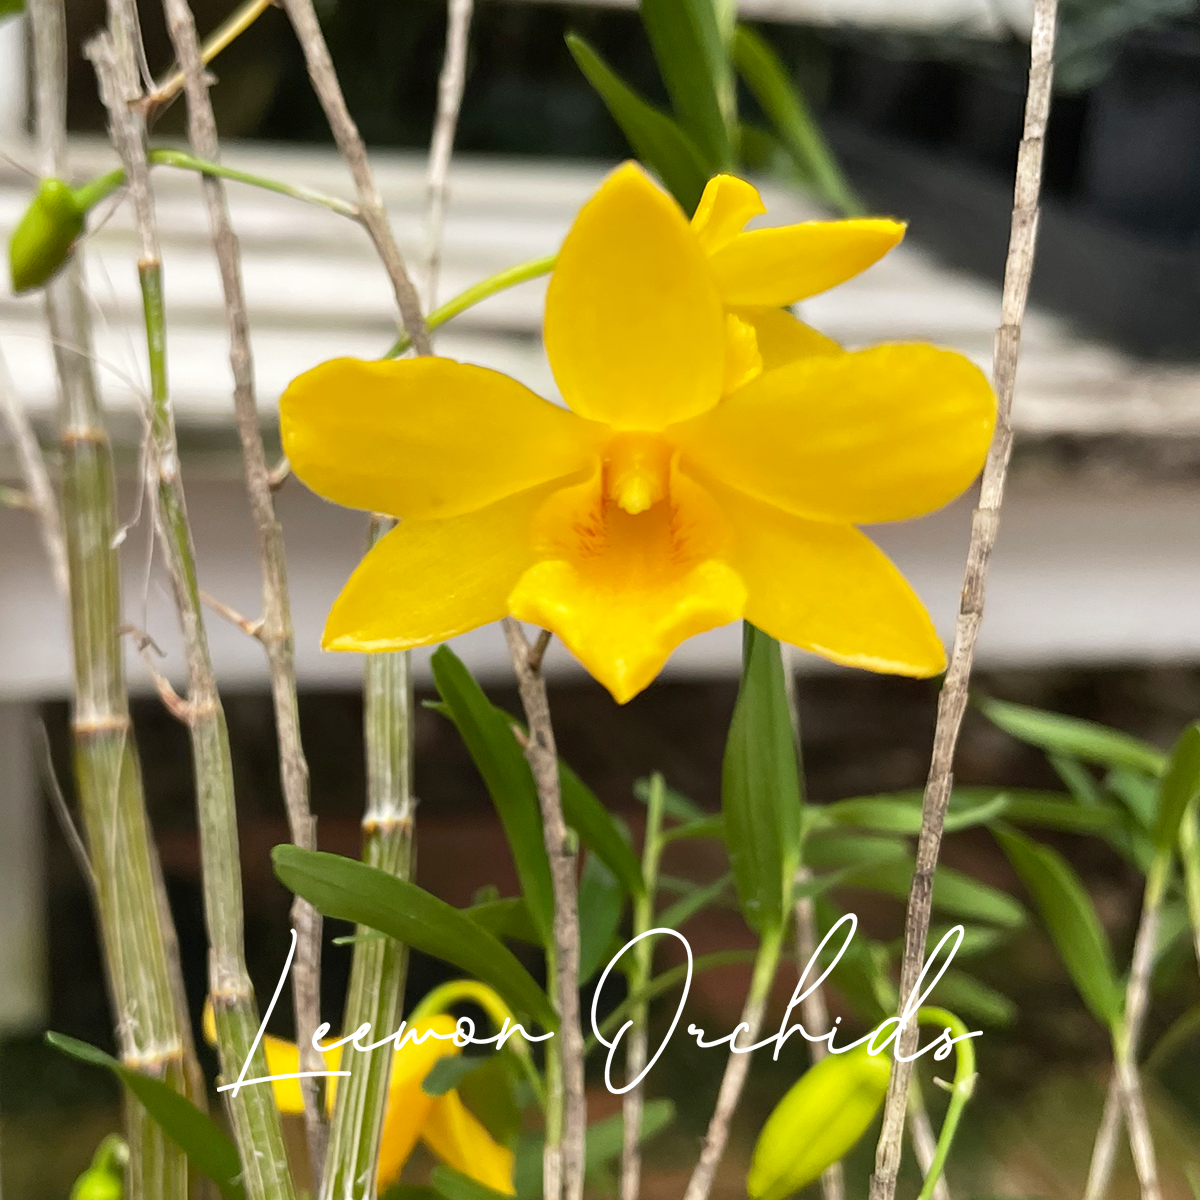 덴드로비움 헨코키아이 Dendrobium hancockii : 꽃대X